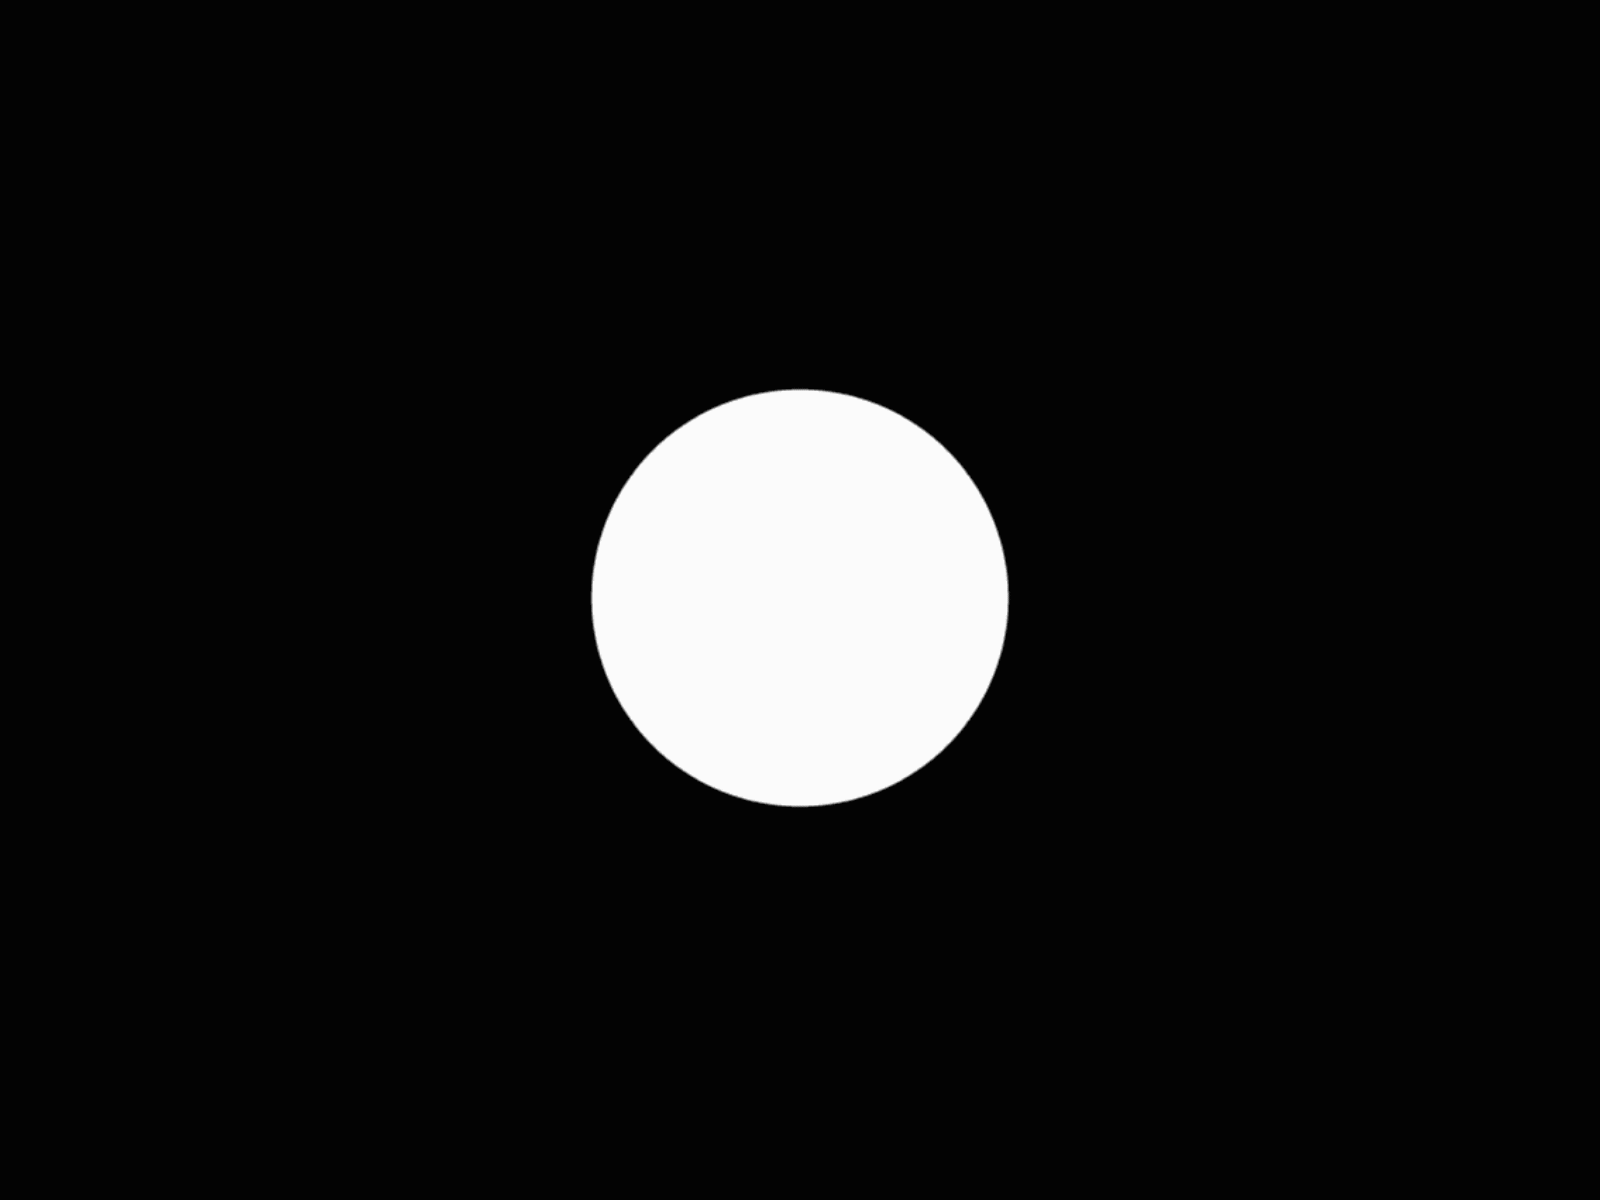 Белый круг на черном фоне. Черный круг на прозрачном фоне. Кружок на черном фоне. Черный фон с белым кругом в центре.